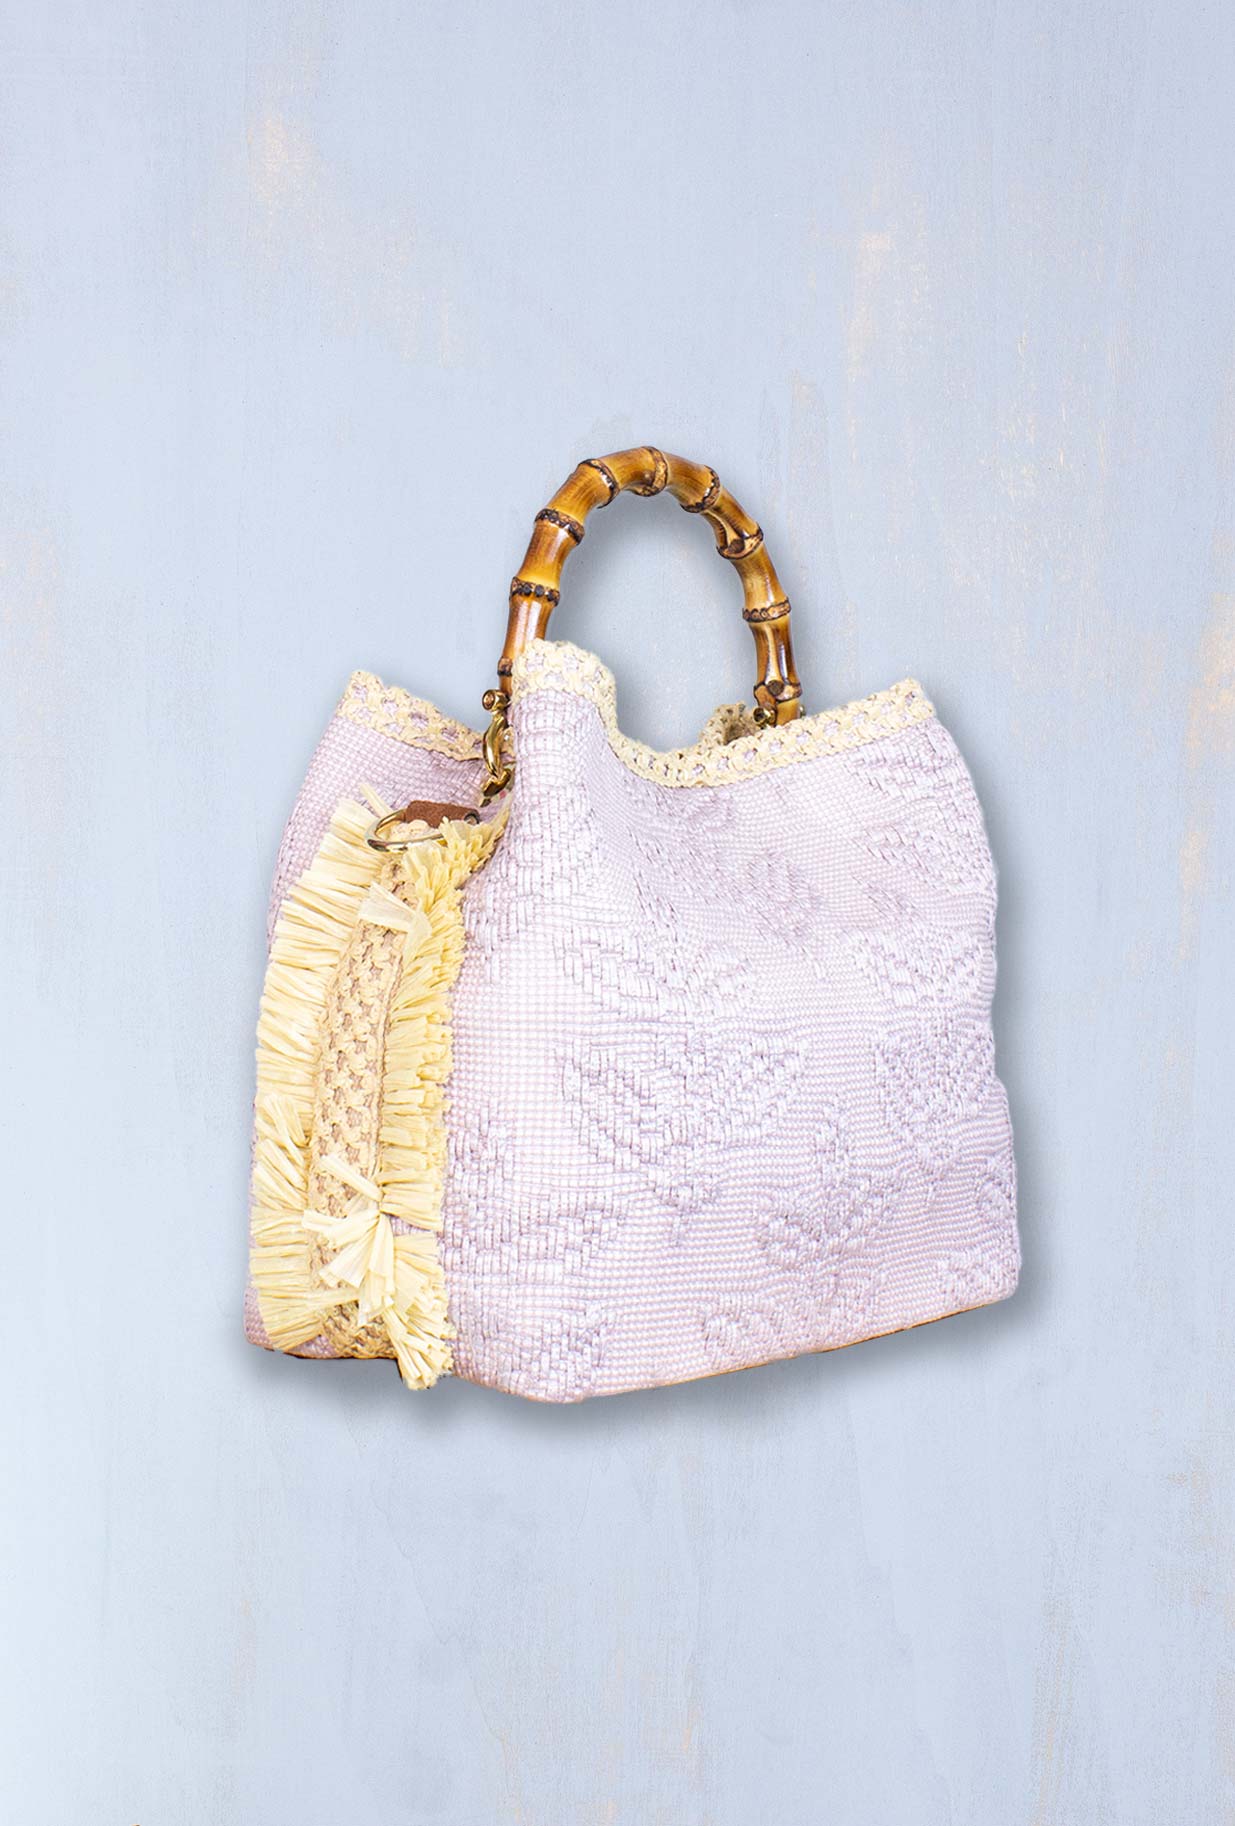 Borsa Secchiello coral chic colore rosa della maison Via Mail Bag collezione pe23